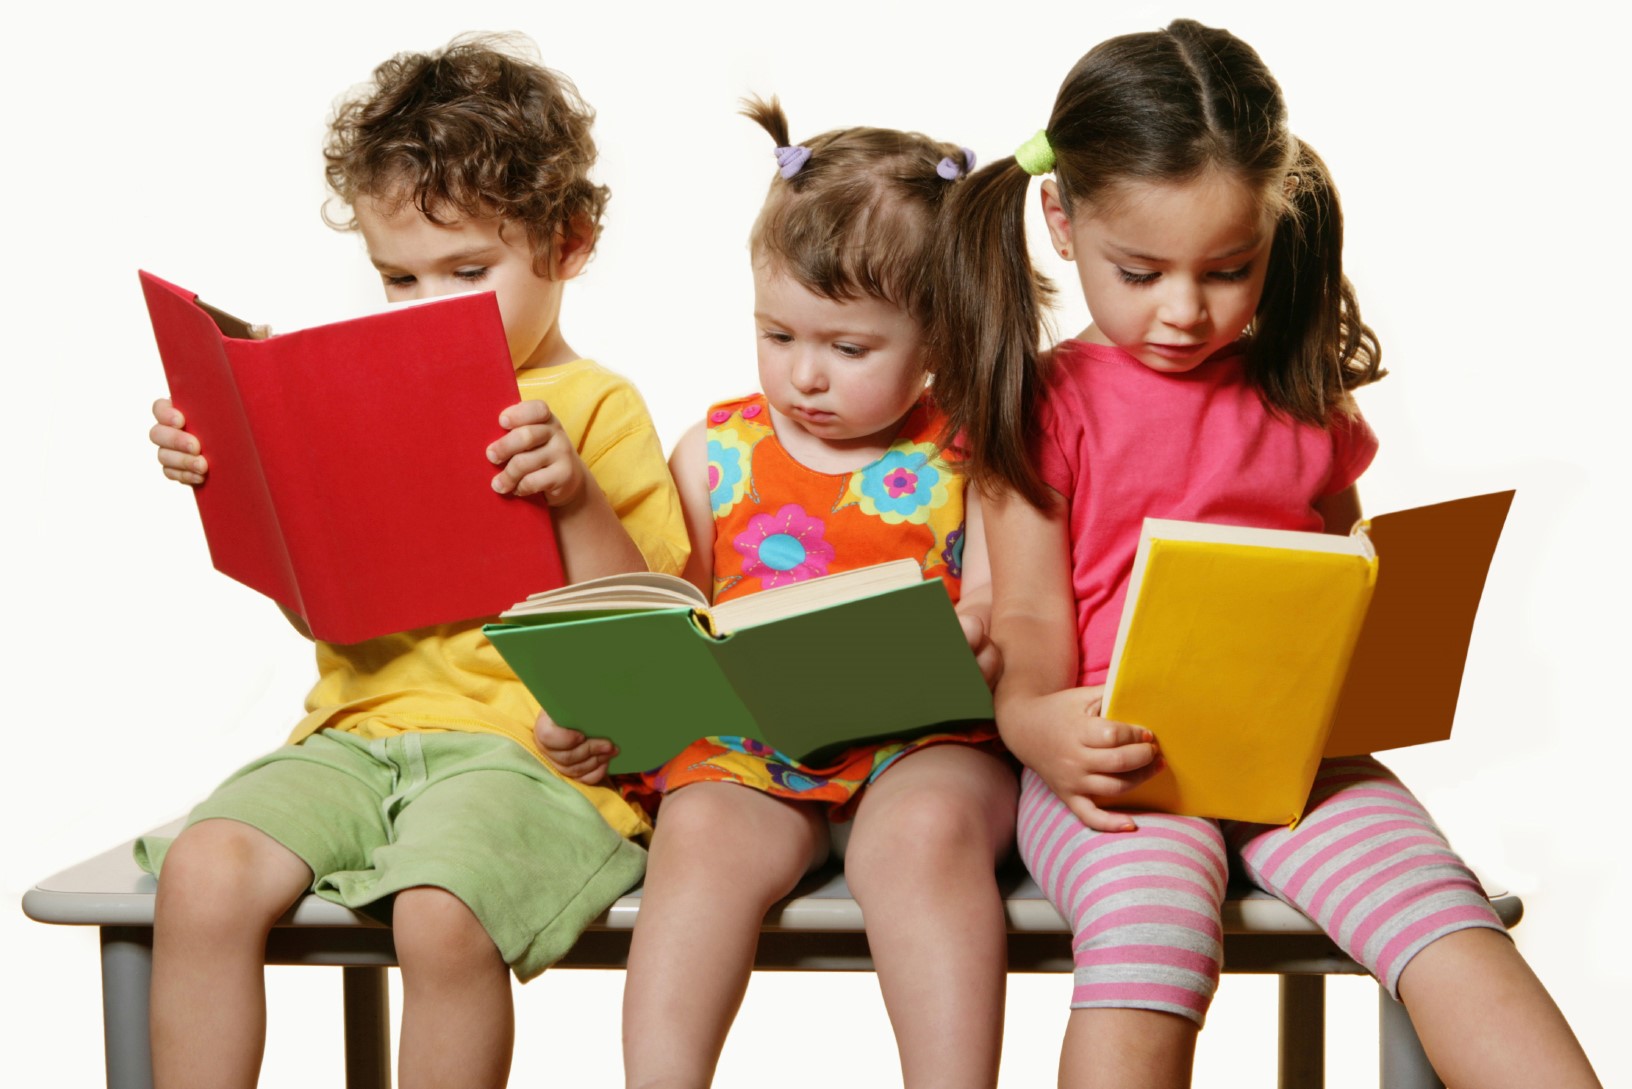 Книжка за руку ведёт: развивающее чтение в младшем школьном возрасте